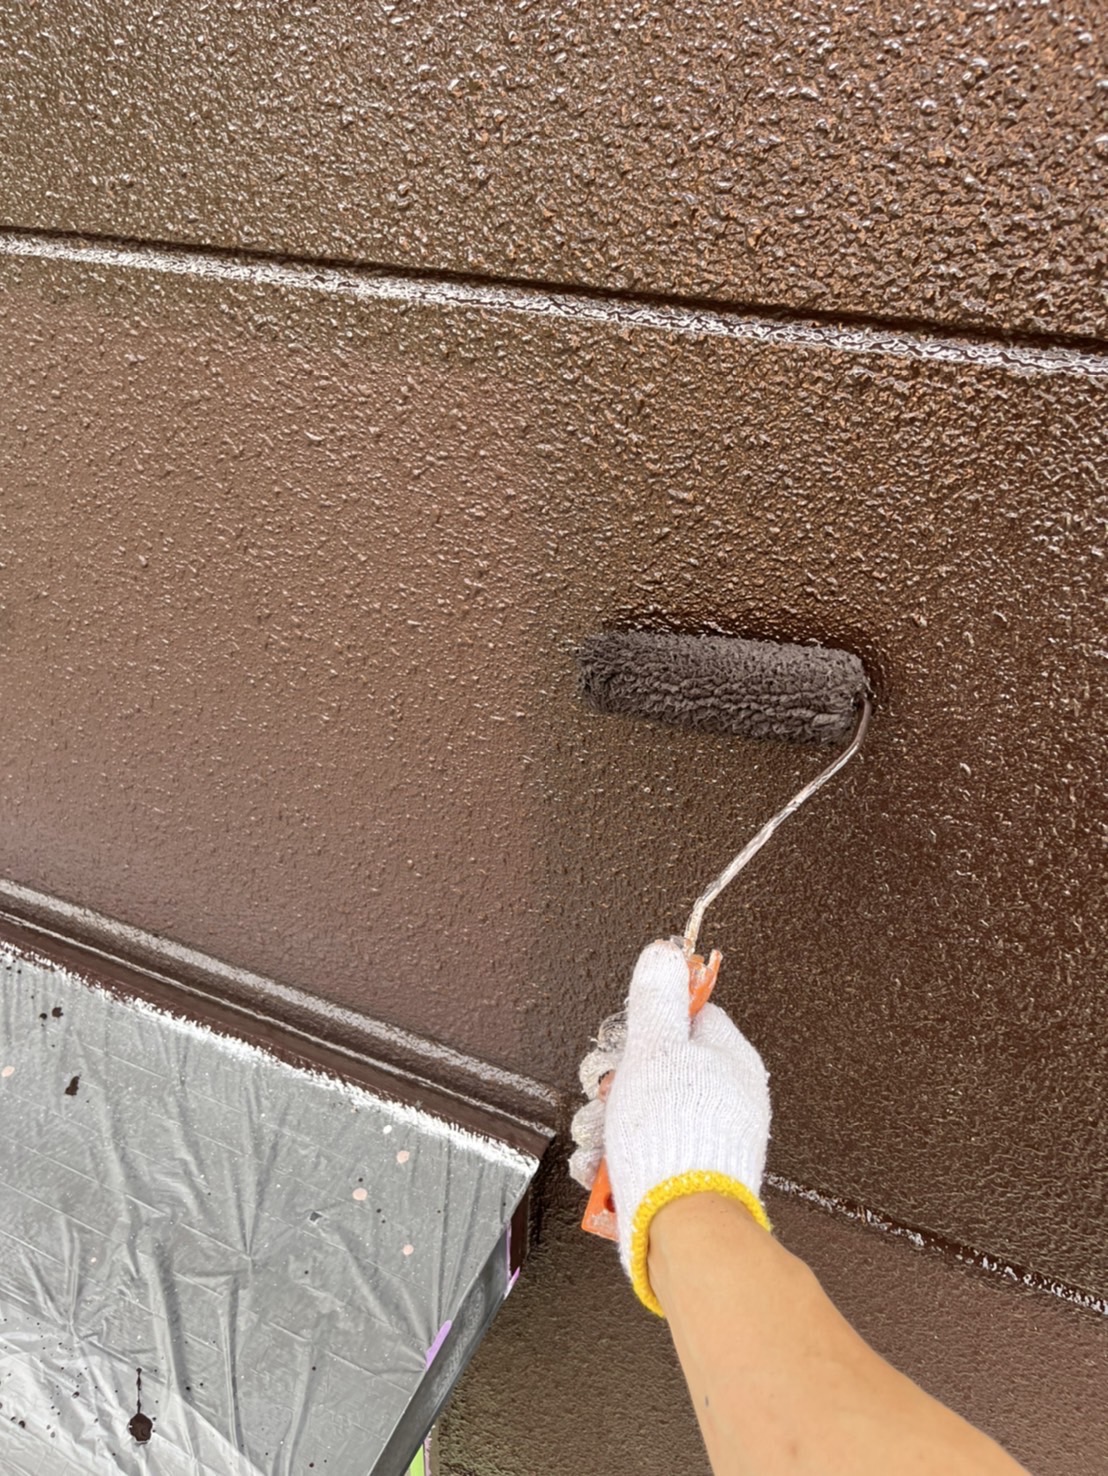 福岡県朝倉郡筑前町朝日のF様邸で屋根外壁共にプレマテックス社の超高耐久塗料タテイルαを使用した塗装工事を行っています。5/25着工です。【HPより】